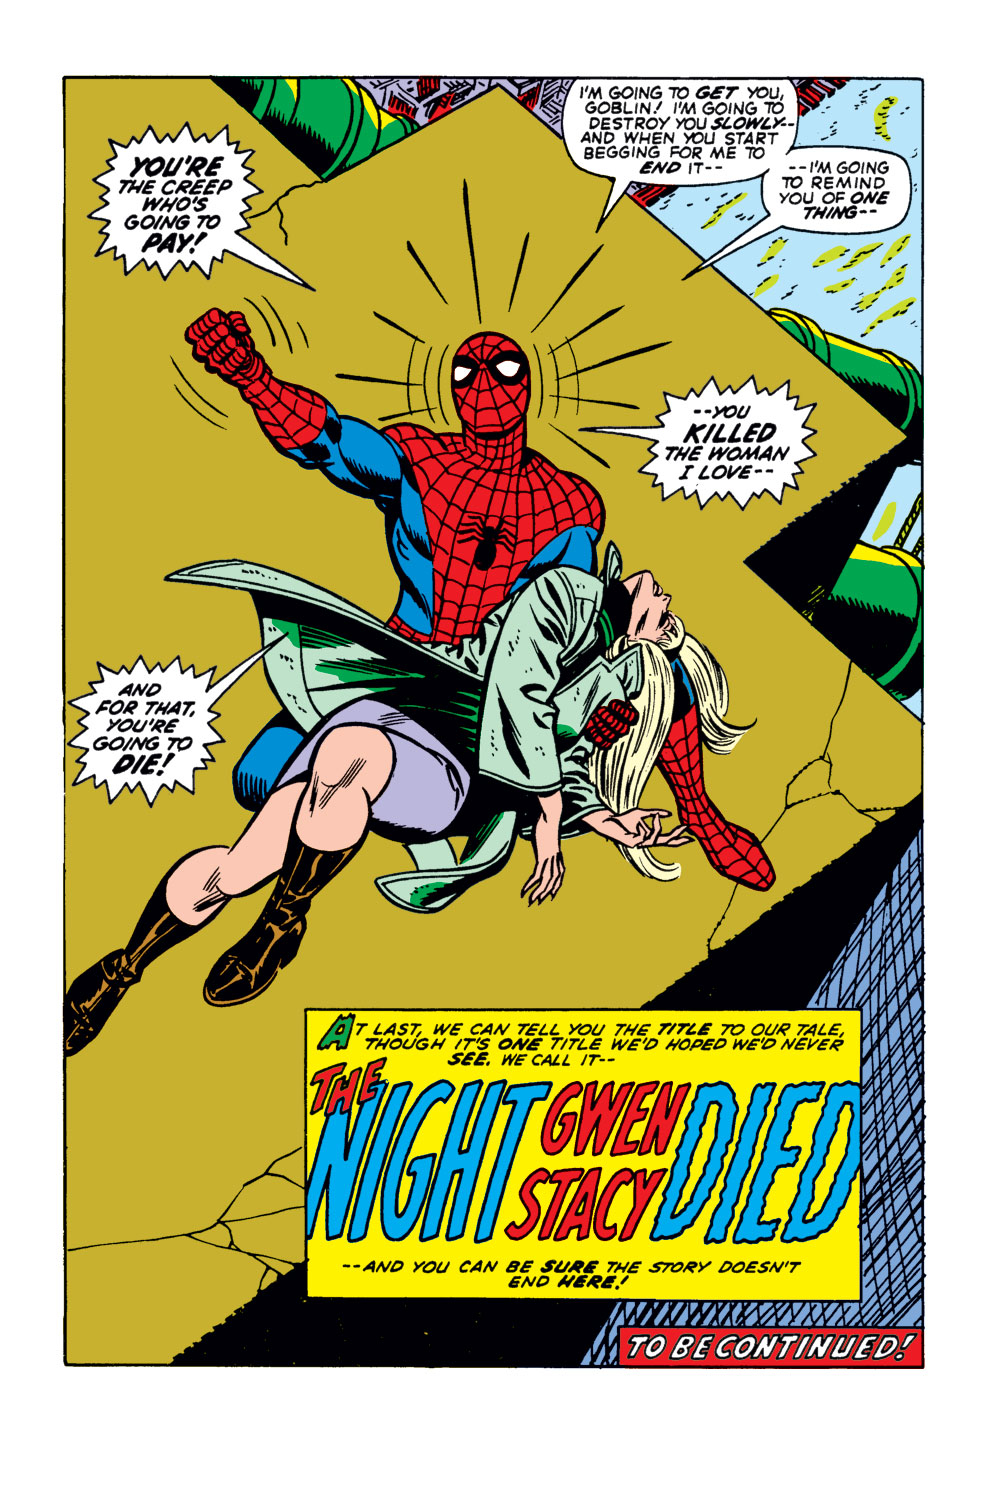 ¡Estos son los momentos que definieron la historia de Spider-Man!